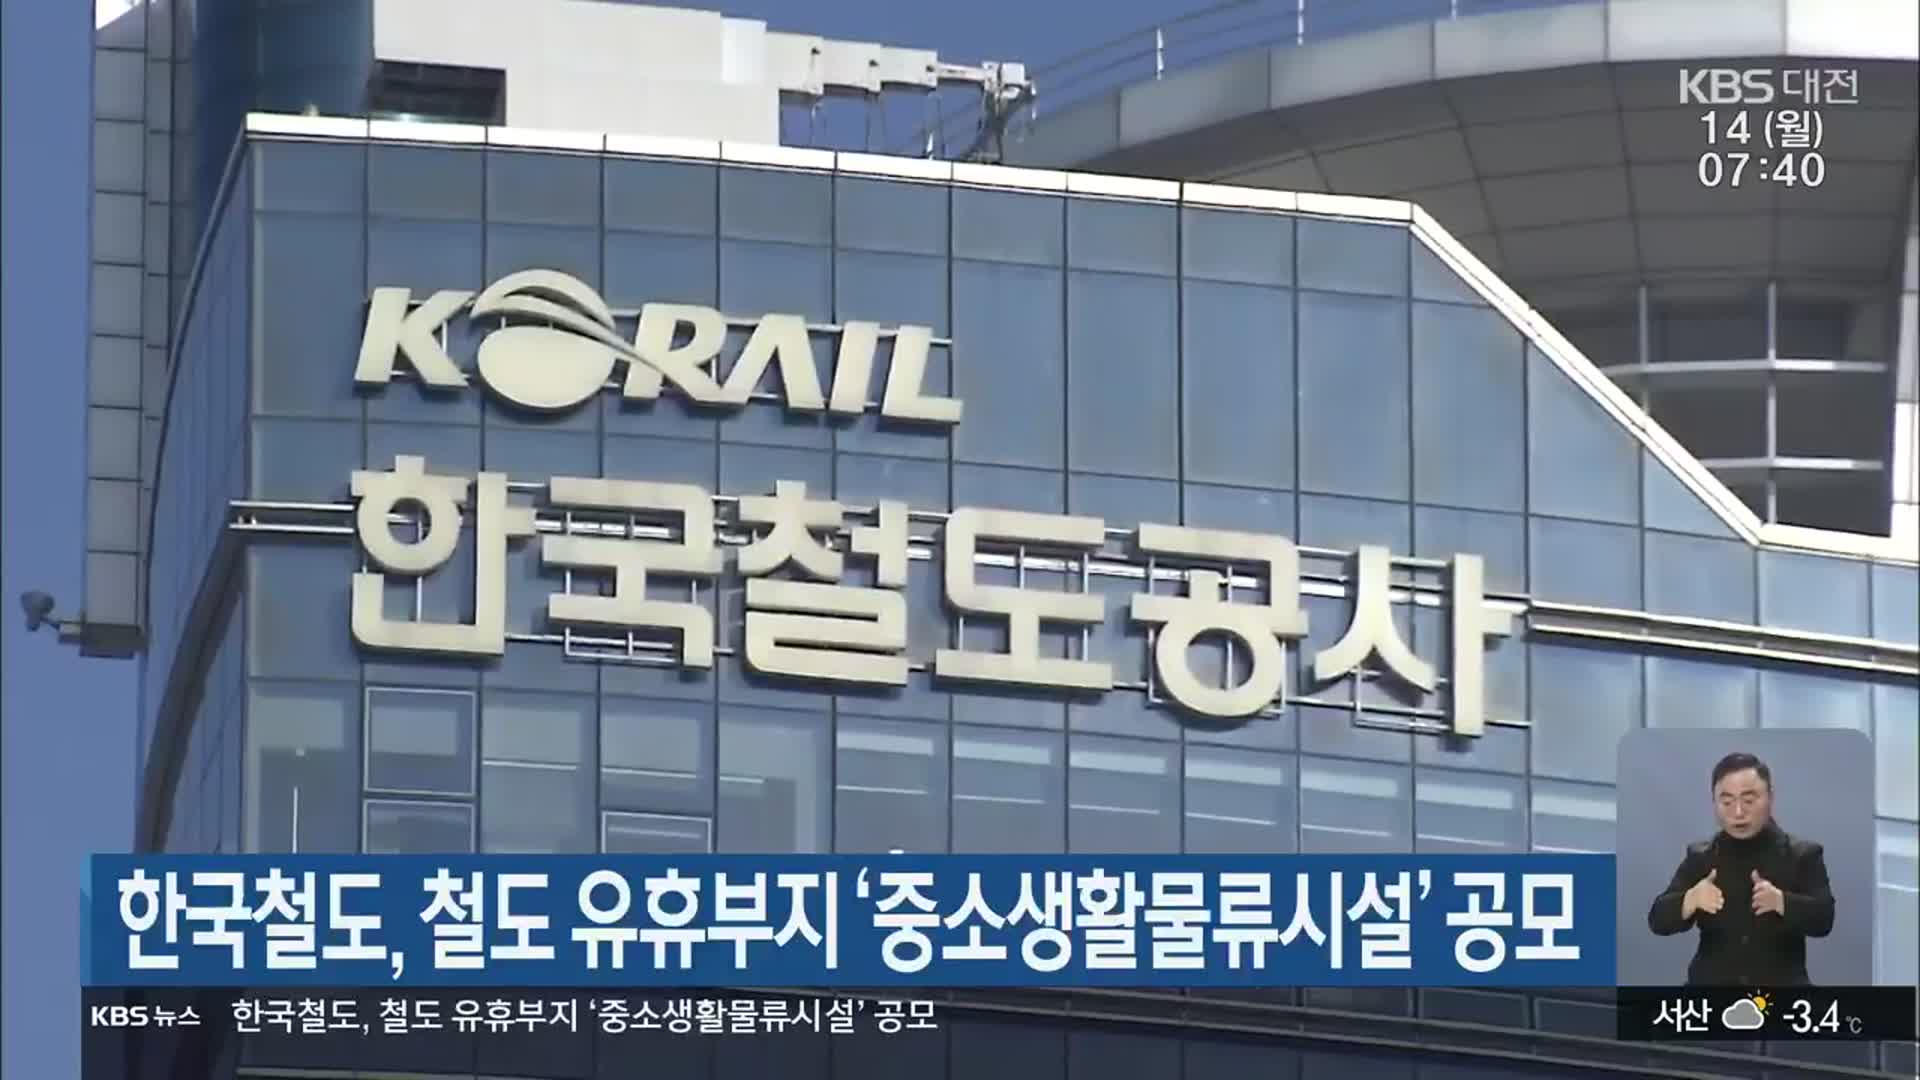 한국철도, 철도 유휴부지 ‘중소생활물류시설’ 공모